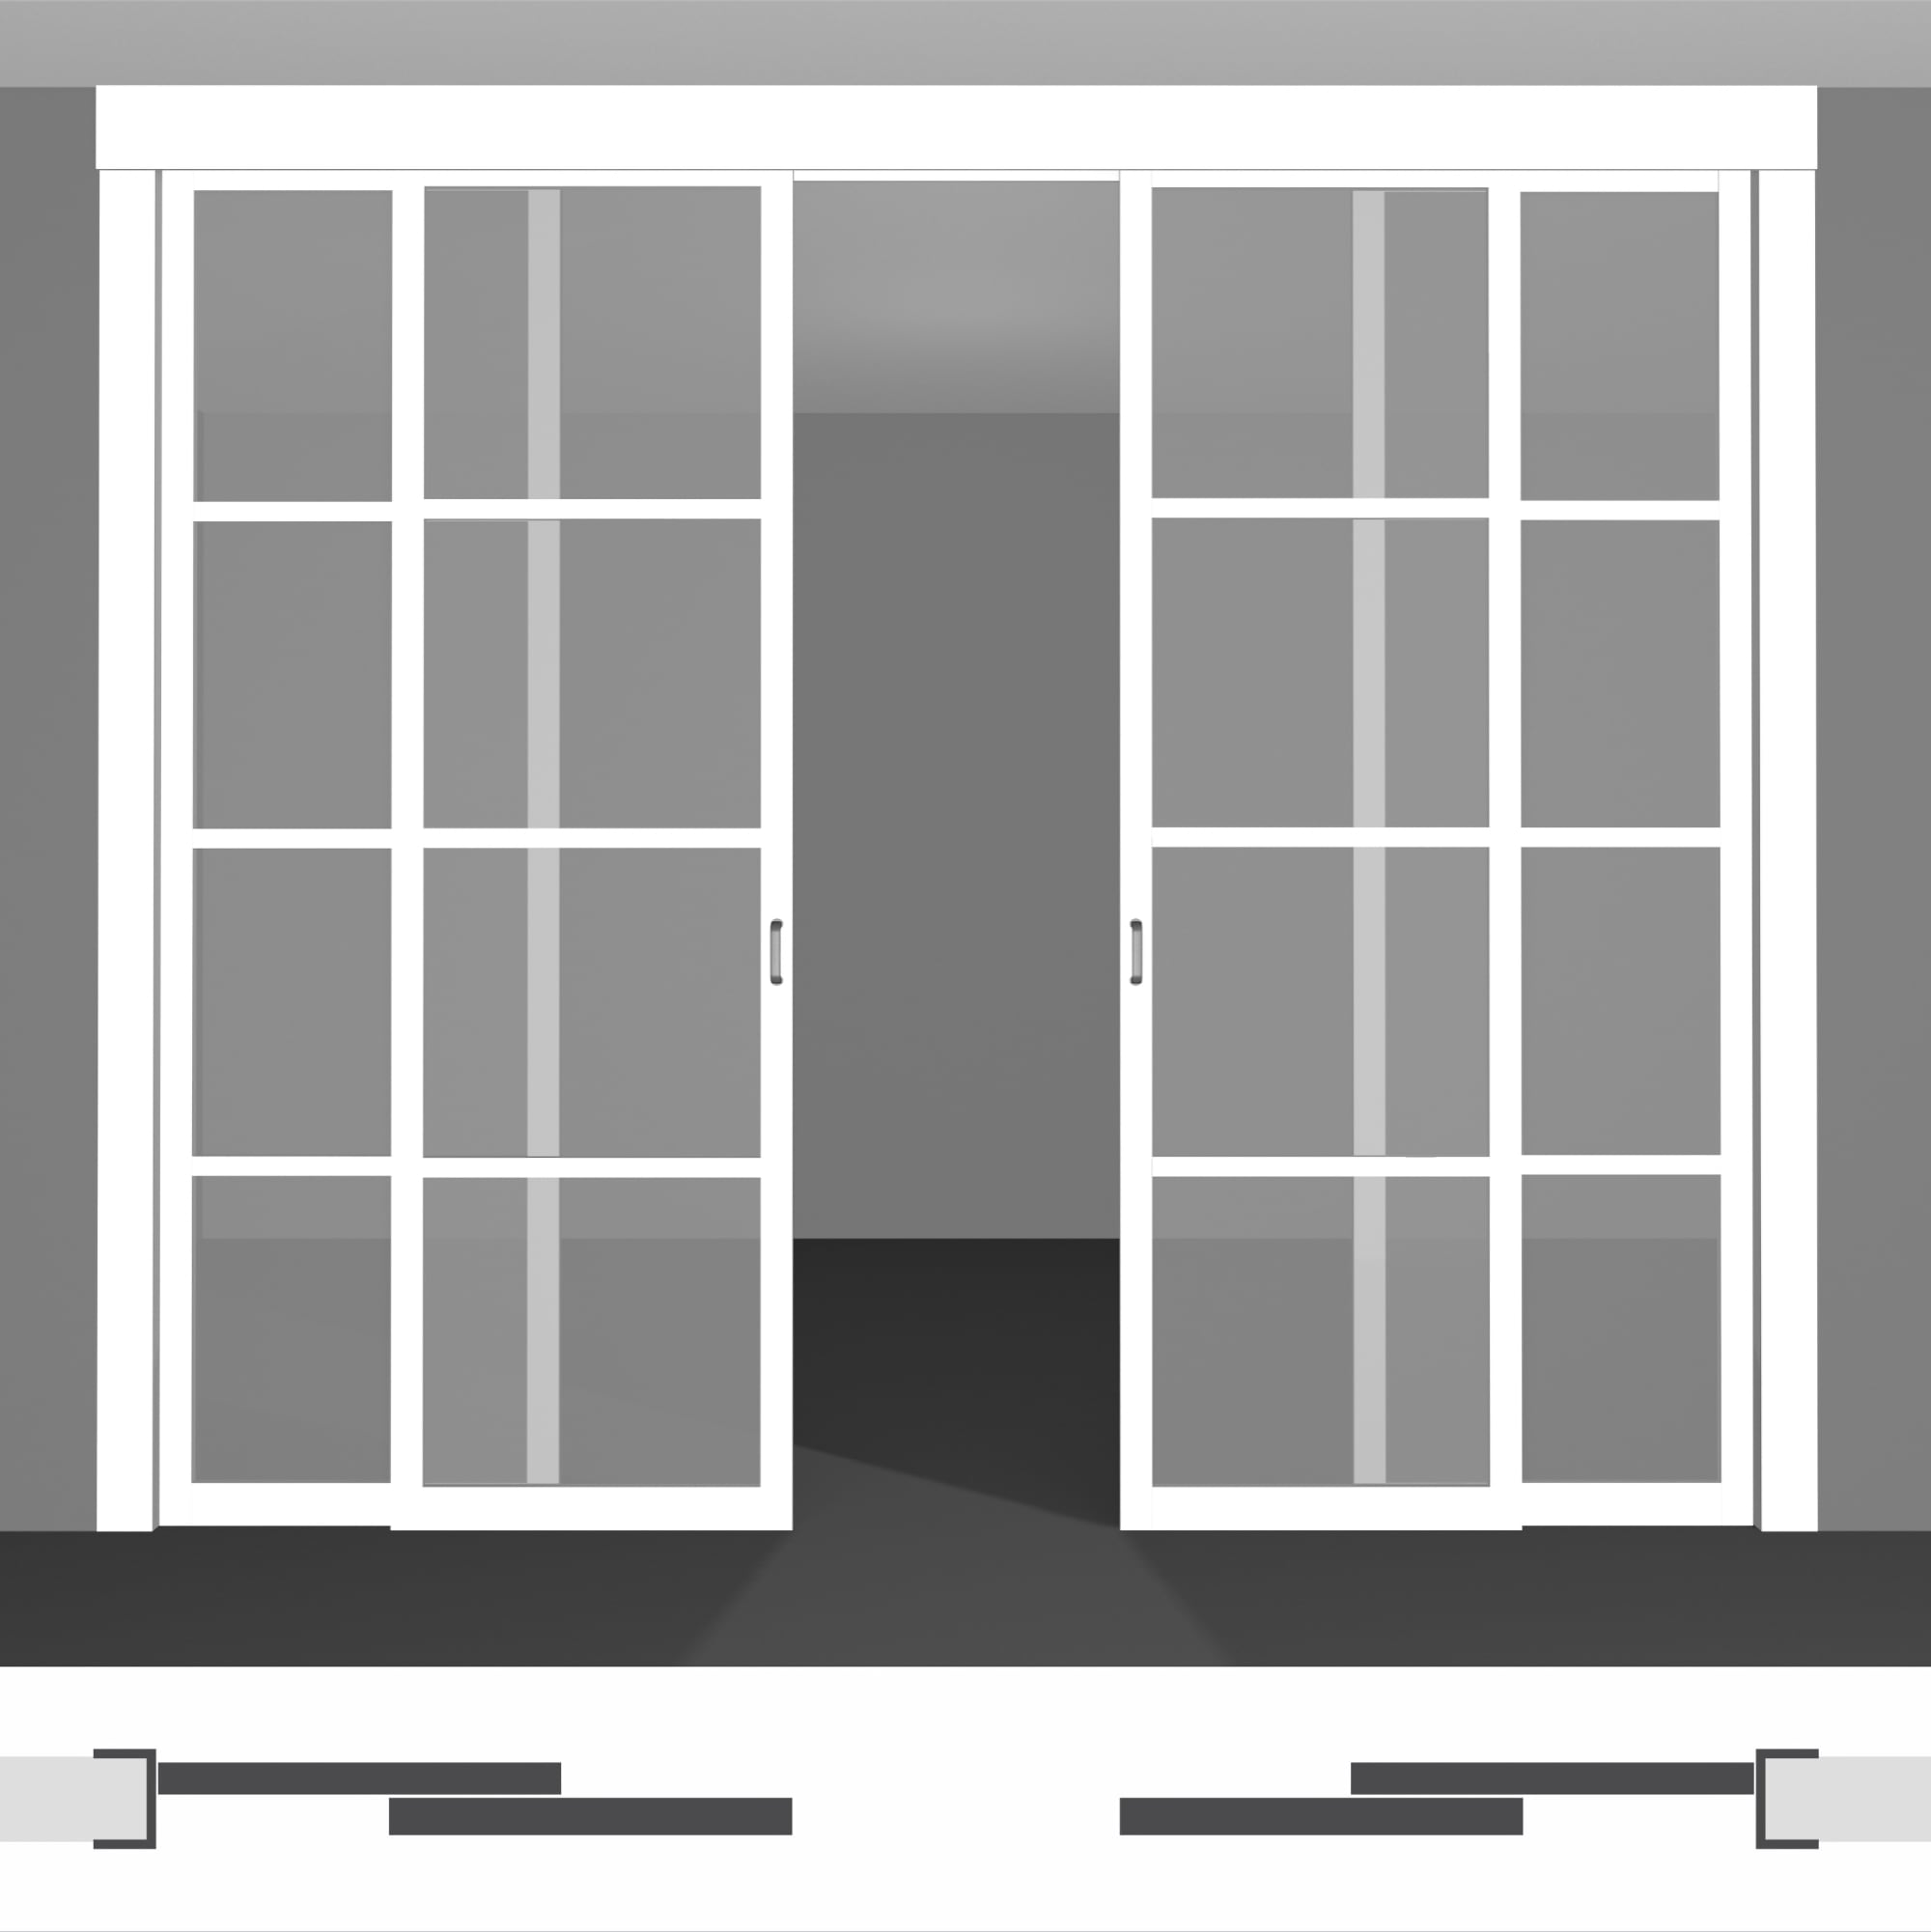 Скляні розсувні системи для інтер'єру: унікальне рішення для вашого будинку в Україні, доступні ціни - P02.3dvs подвійний комплект під стелю • установка всередині отвору